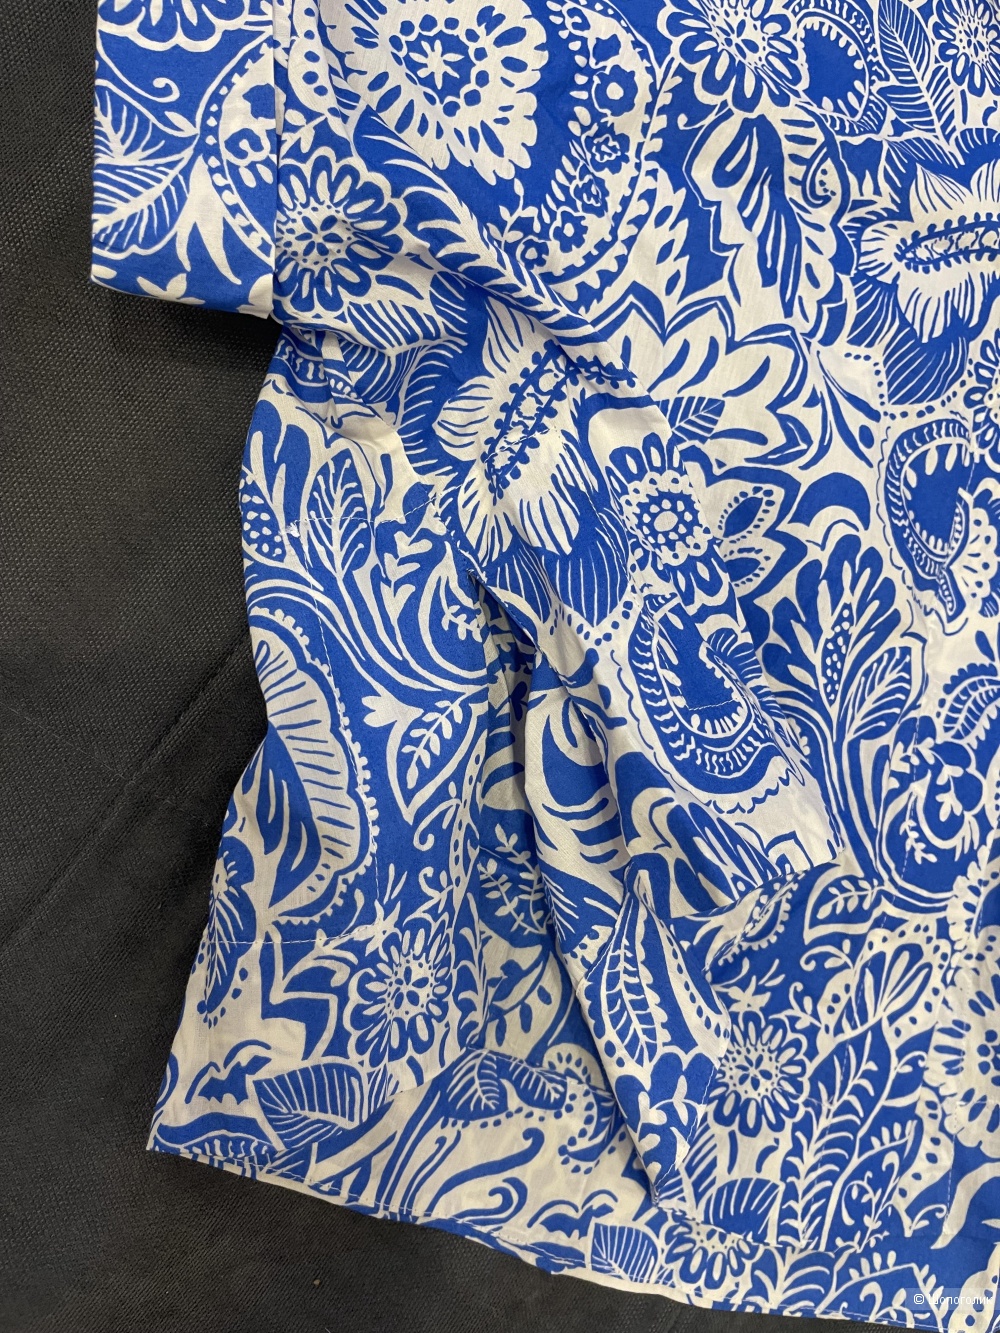 Рубашка Massimo Dutti размер М